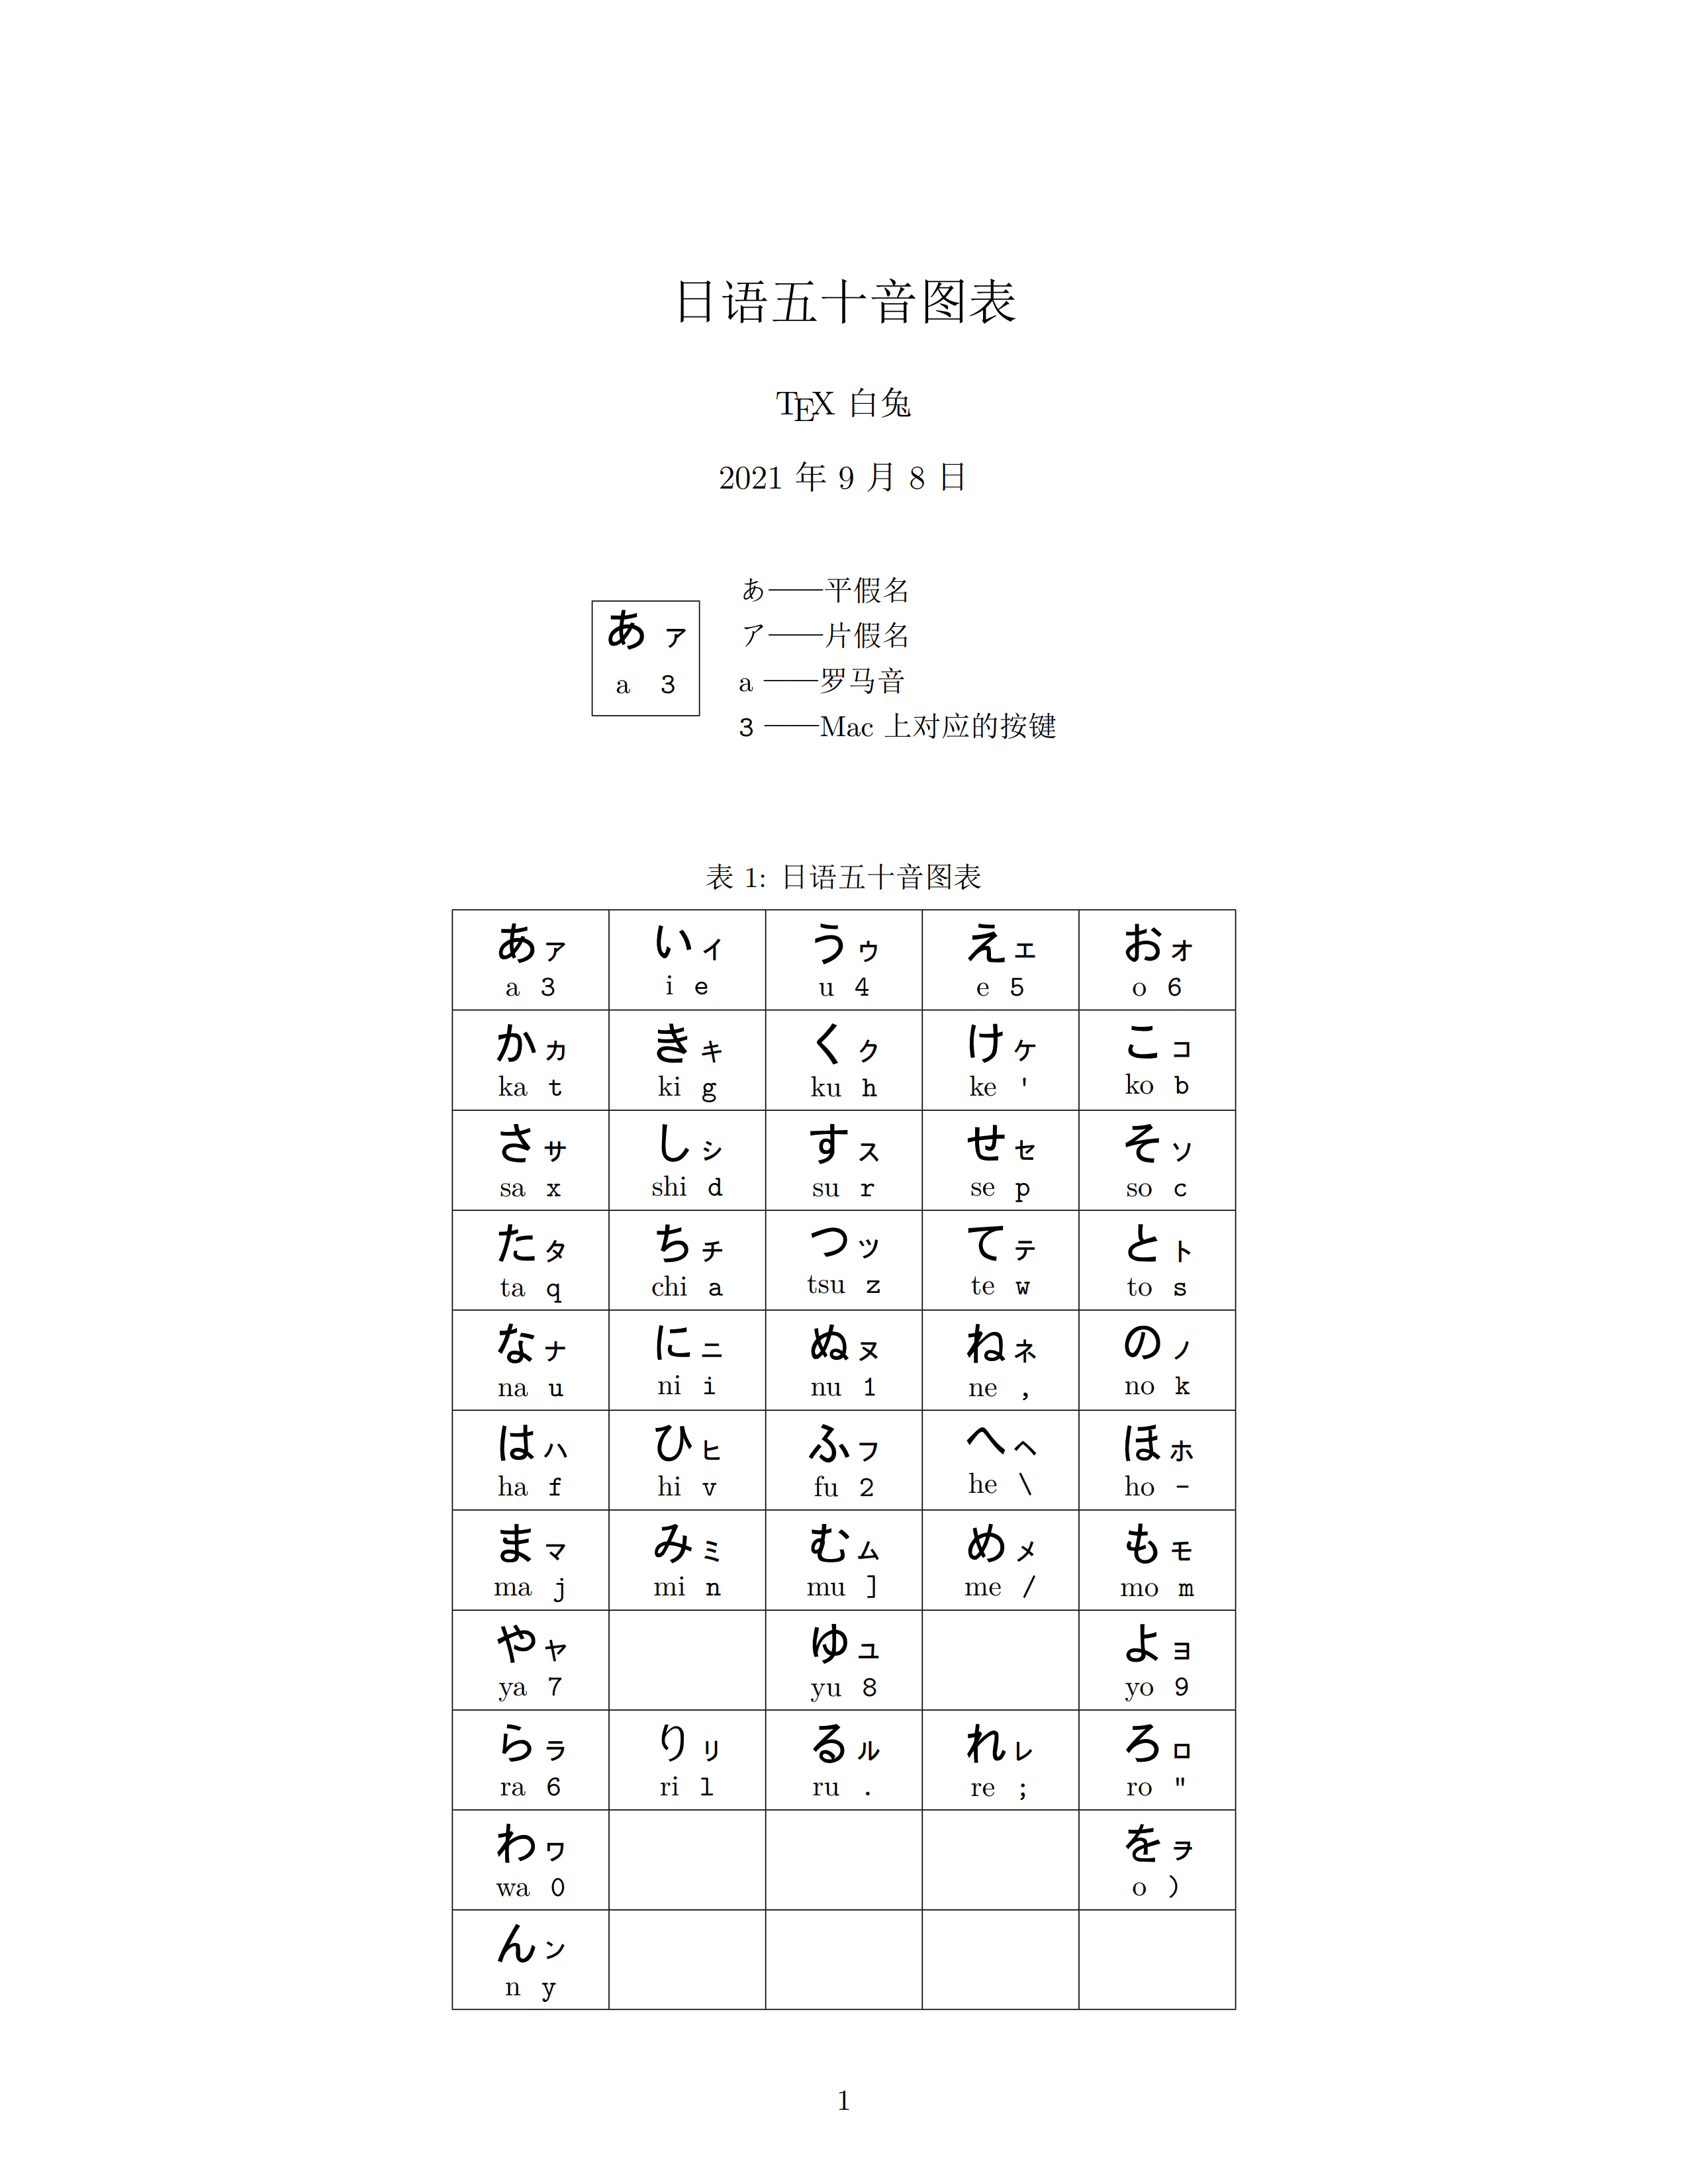 日语50音图 读法图片